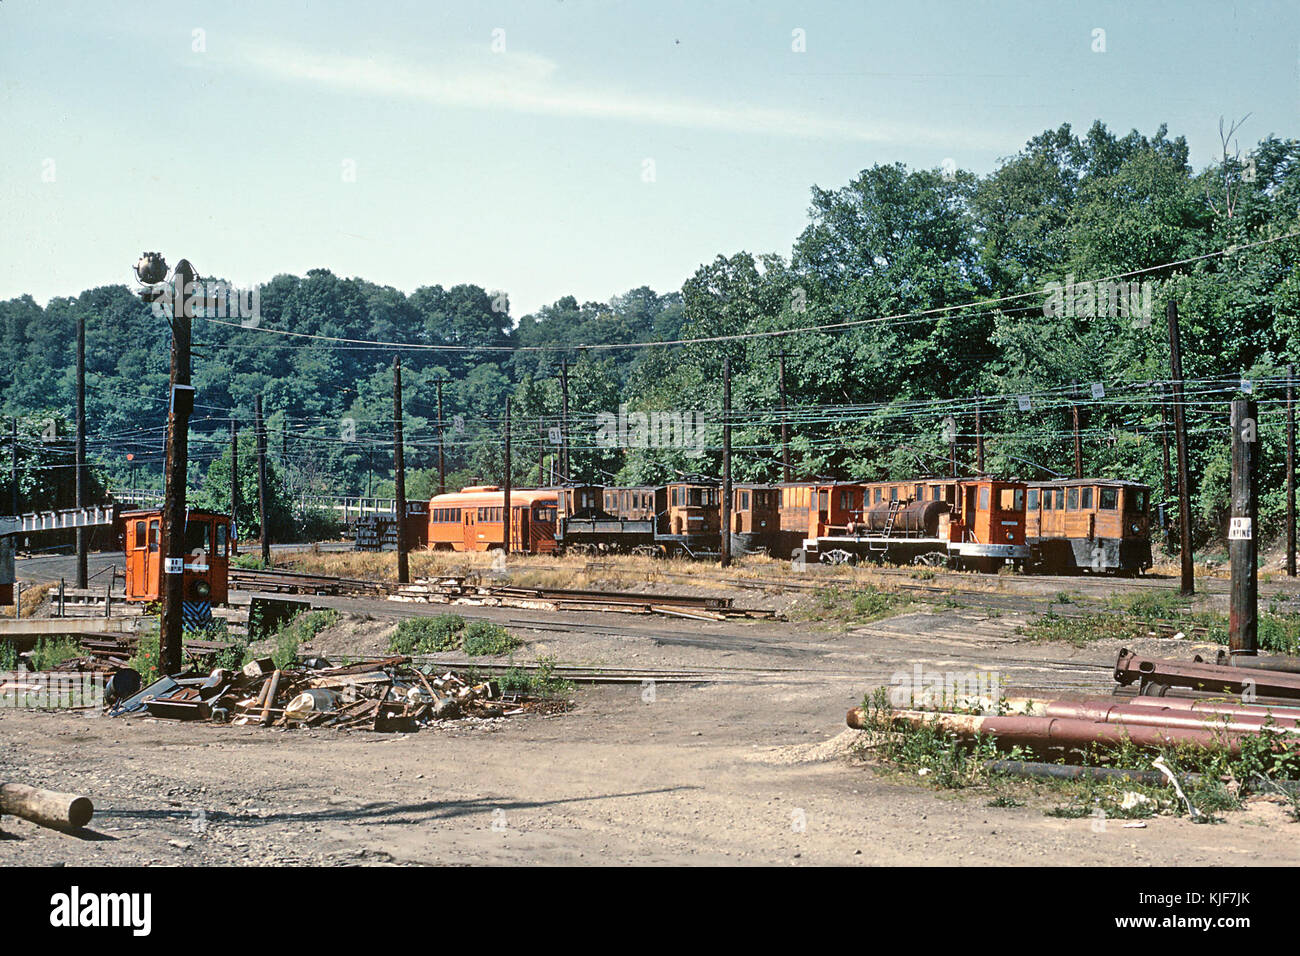 Le PAAC diverses lignes et équipements de travail au sud de South Hills Jct. Pittsburgh, PA, le 26 juin 1965 (26586523440) (2) Banque D'Images